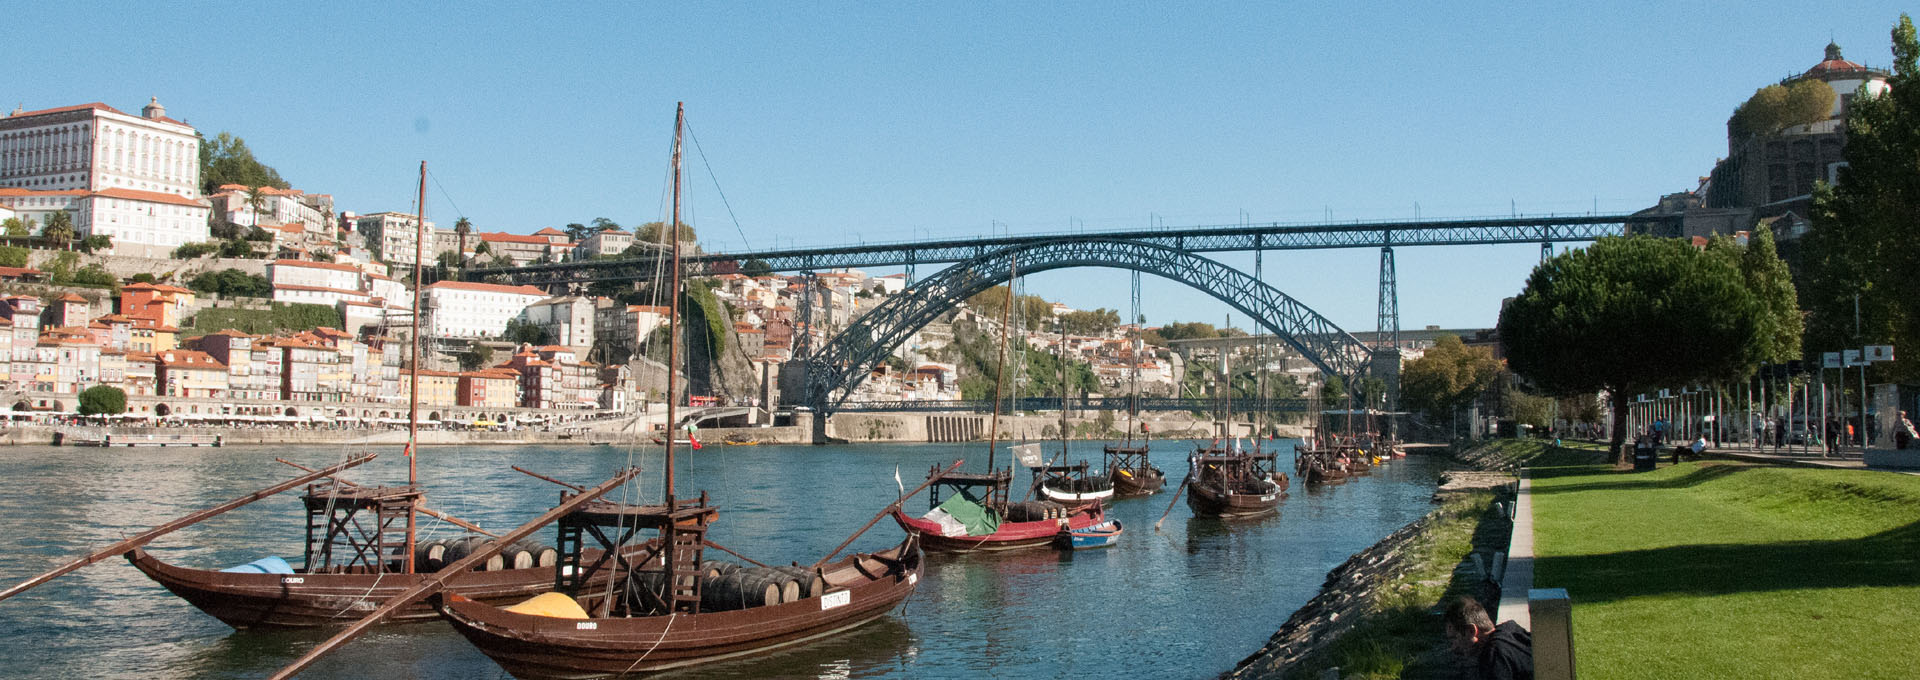 Puente Don Luis I sobre el río Duero de Oporto.